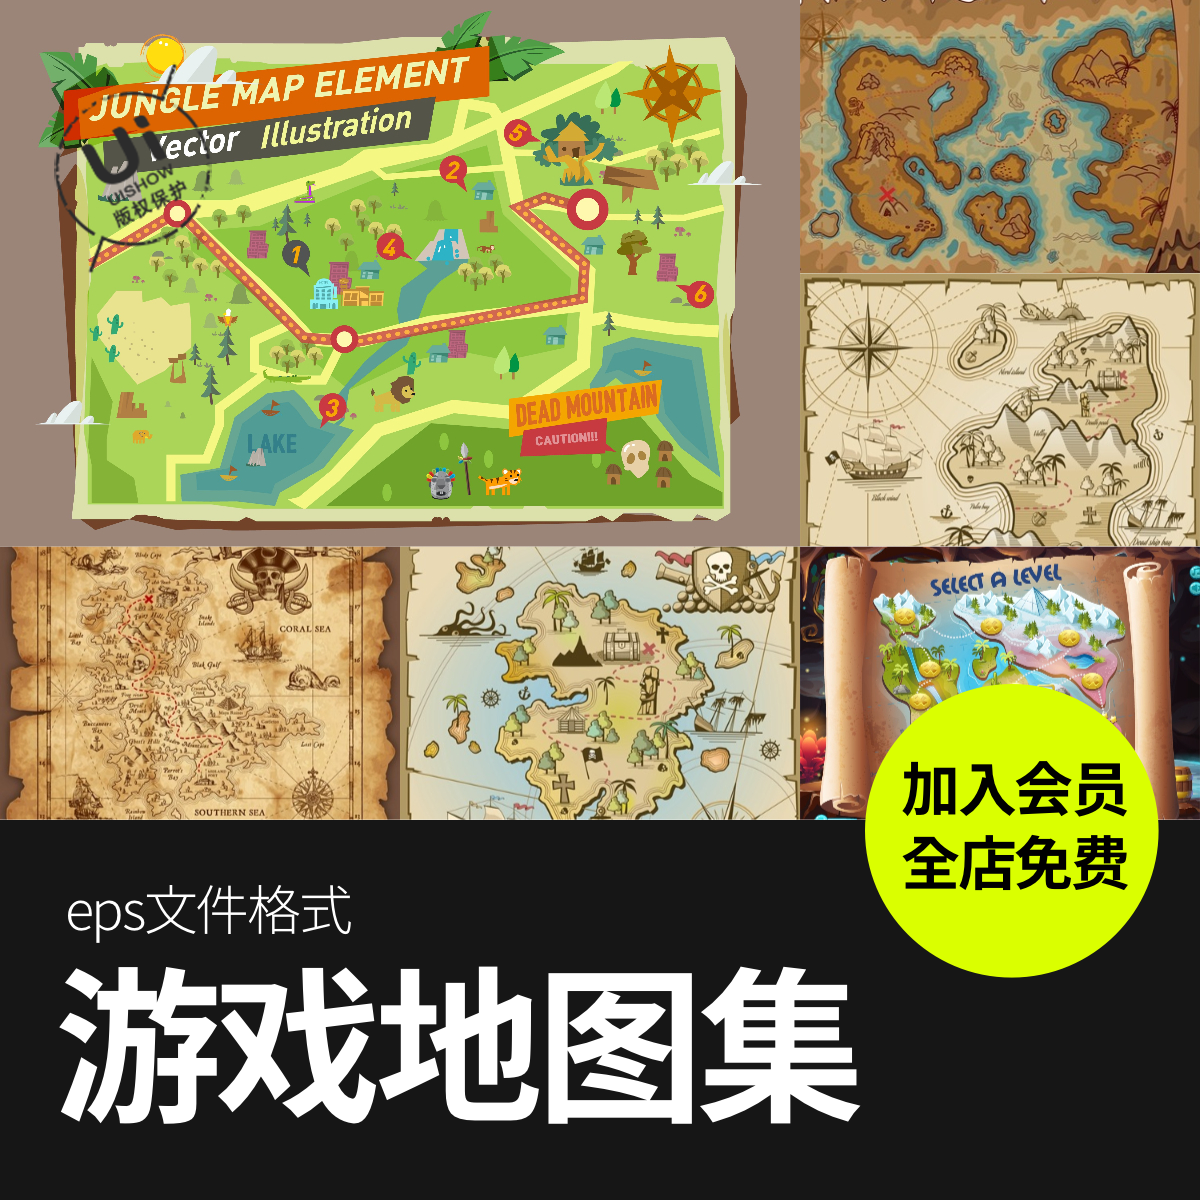 卡通丛林航海复古游戏藏宝图地图森林牛皮纸界面矢量图片设计素材